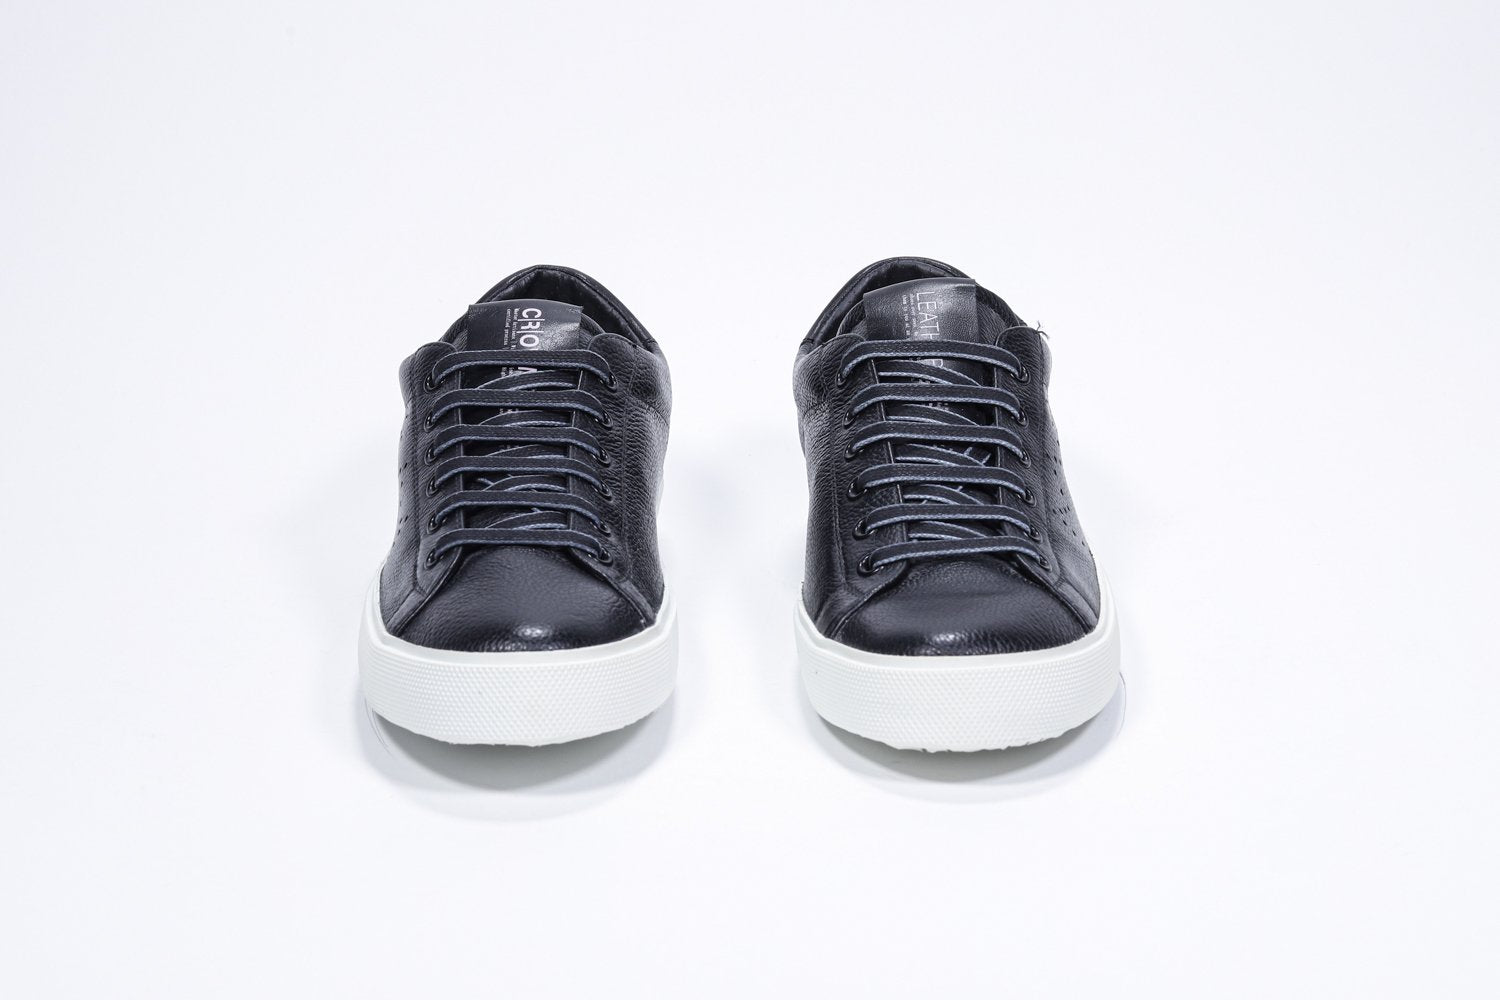 Vista frontale di BASSE nero sneaker con logo della corona traforato sulla tomaia. Tomaia in pelle e suola in gomma bianca.